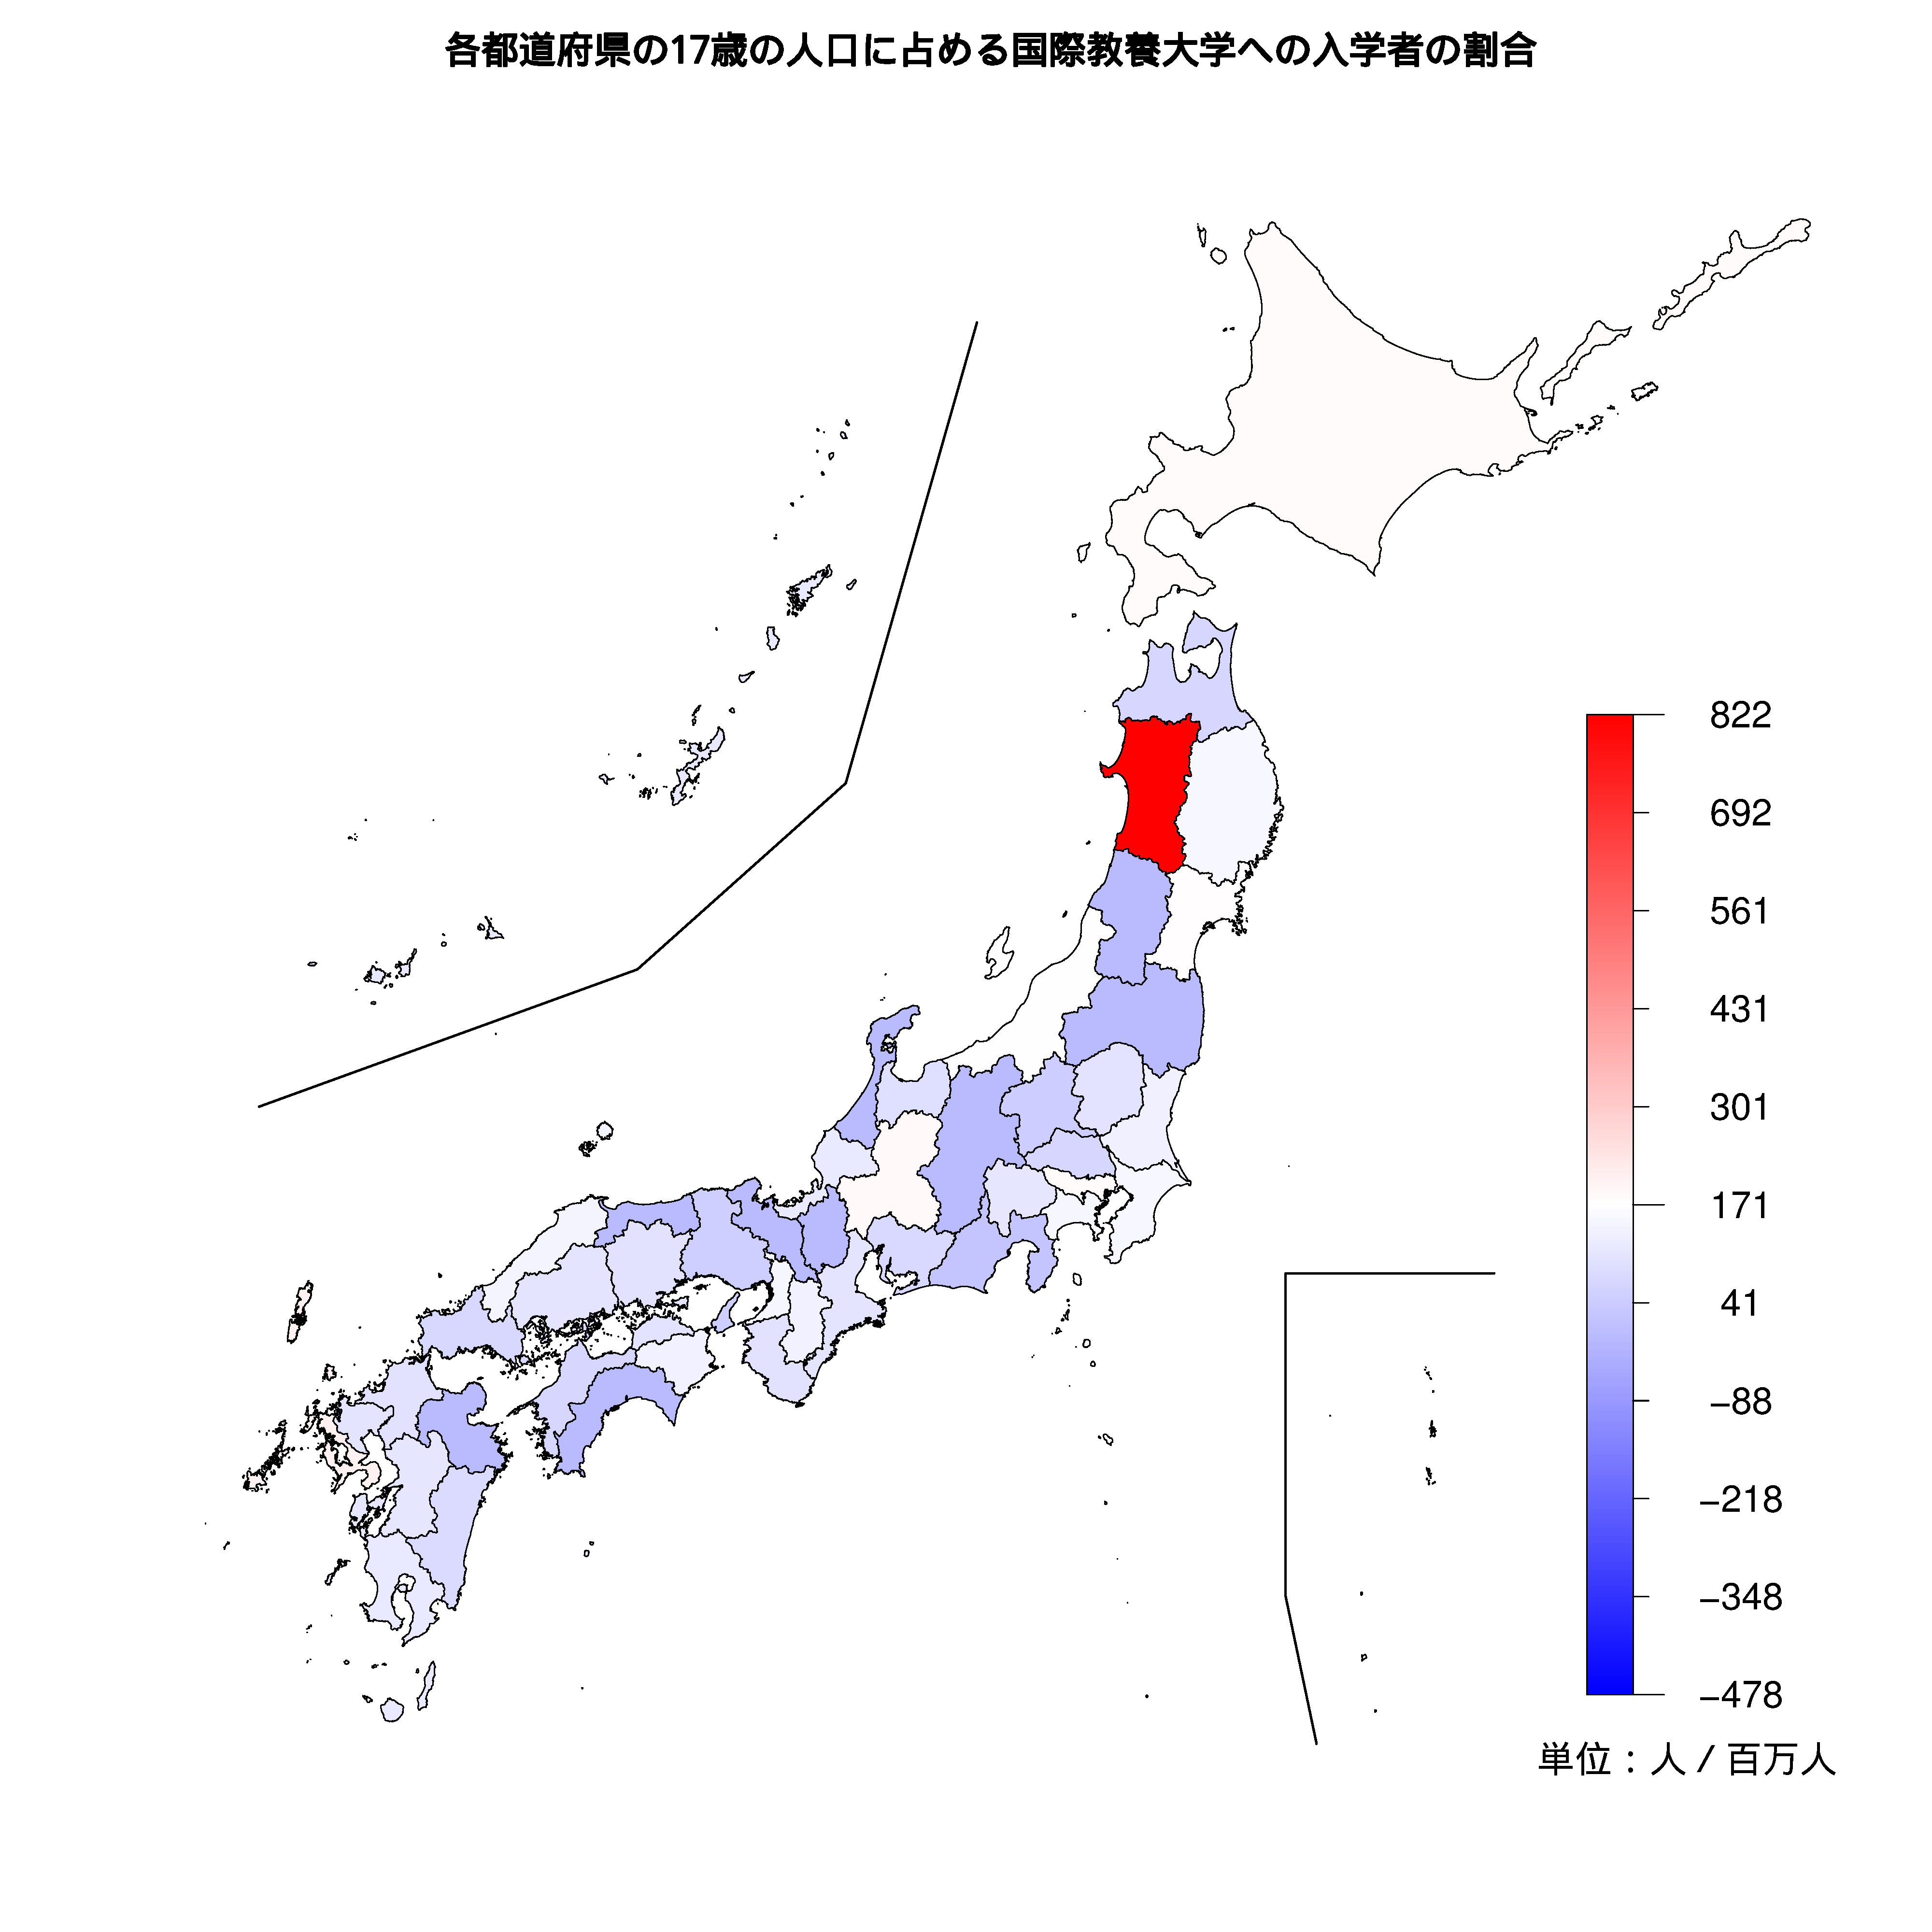 国際教養大学への入学者が多い都道府県の色分け地図